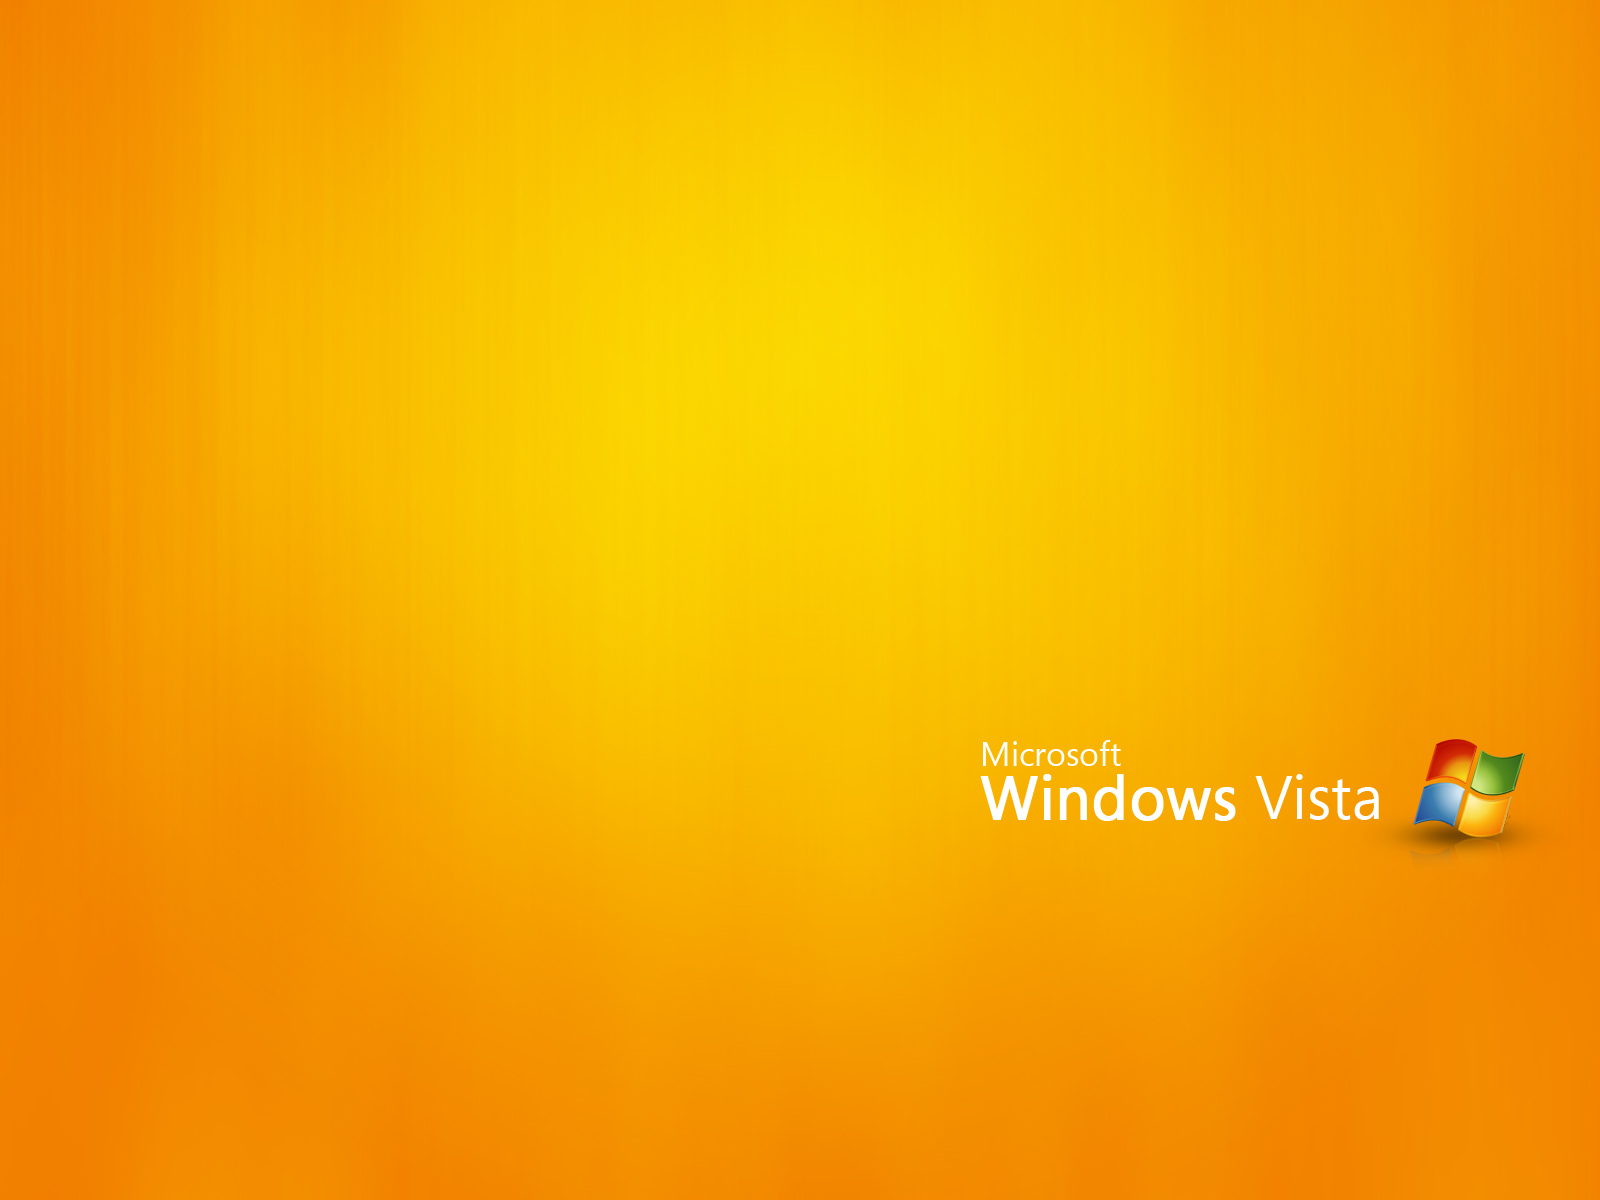 壁纸1600x1200Vista主题 3 16壁纸 Vista主题壁纸 Vista主题图片 Vista主题素材 系统壁纸 系统图库 系统图片素材桌面壁纸